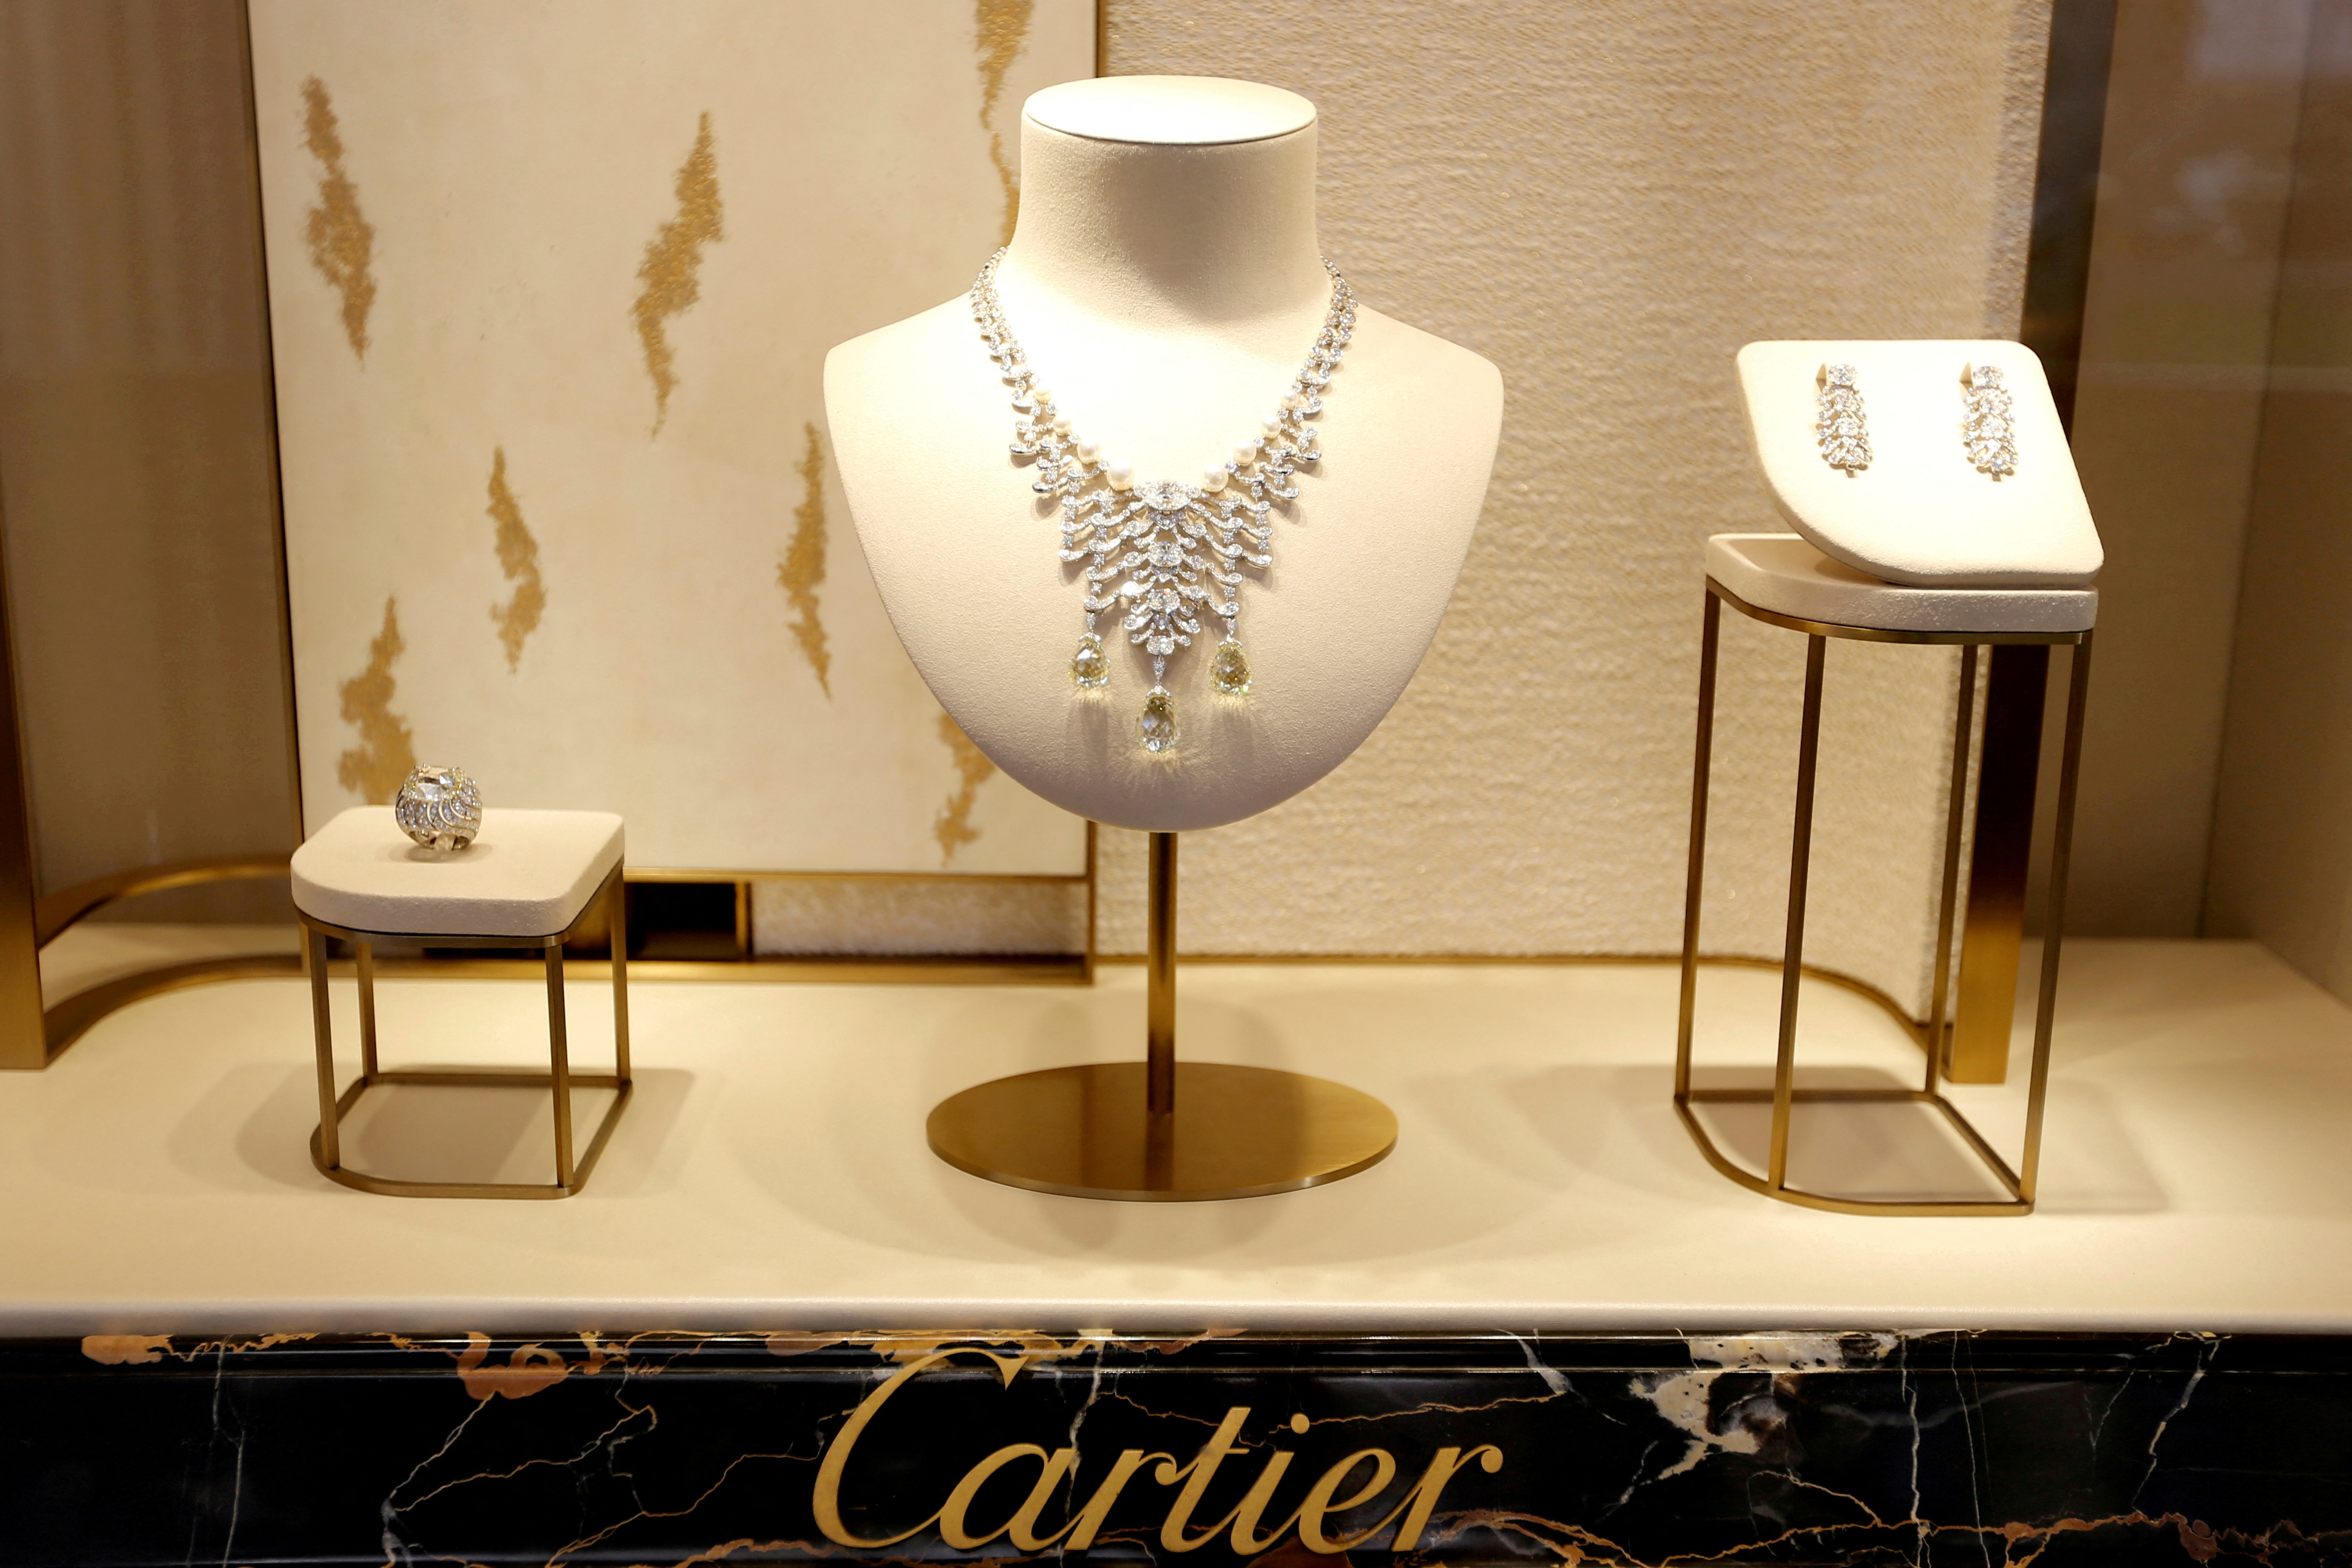 Cartier es una marca de lujo, fue creada en el año de 1847 y se  especializa principalmente en joyería lujosa, relojes y accesorios.
(REUTERS/Regis Duvignau//File Photo)